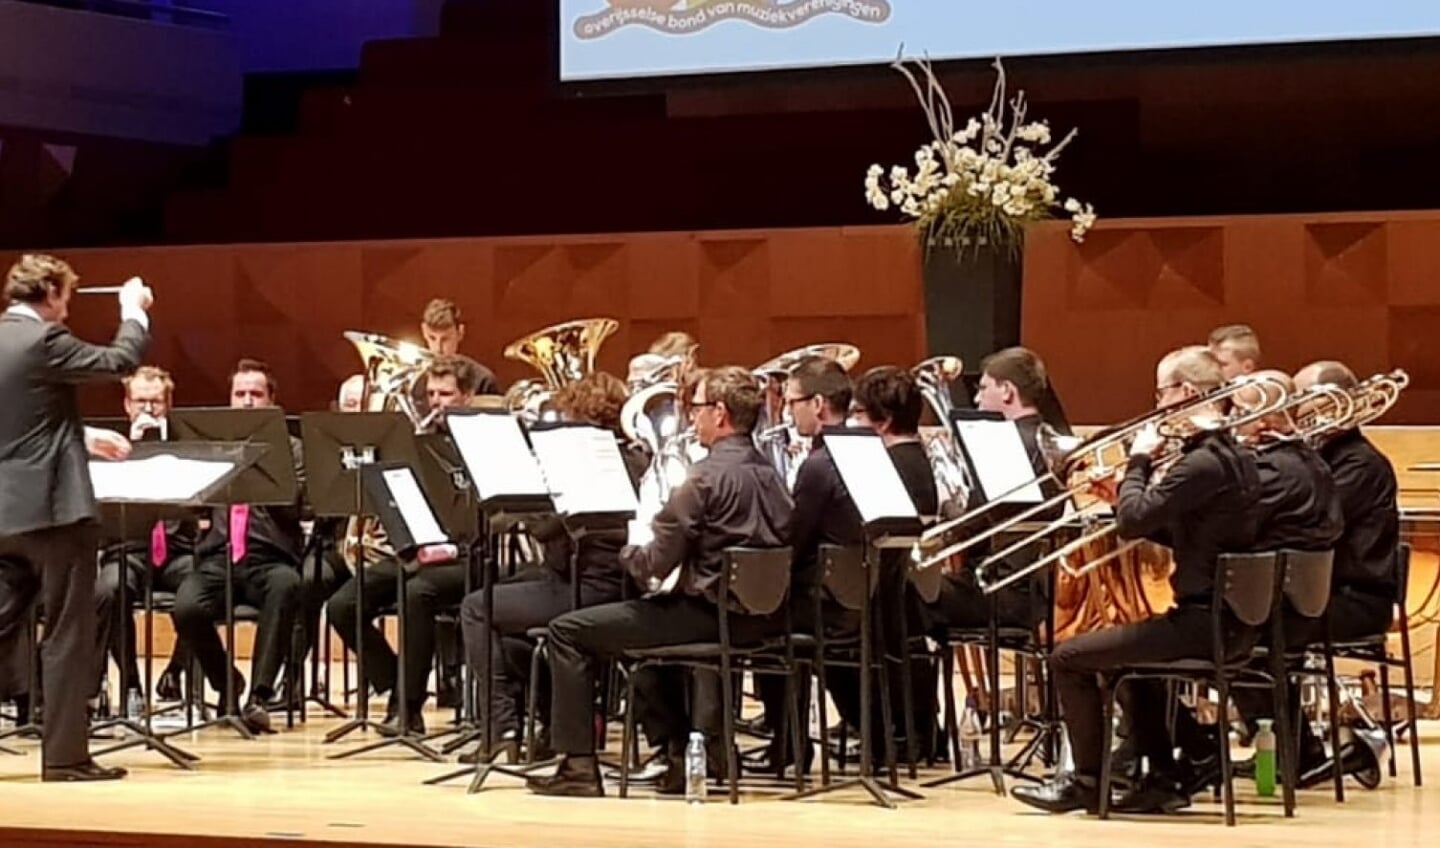 Brassband Harp & Luit olv hun vorige dirigent, Maarten van de Kolk